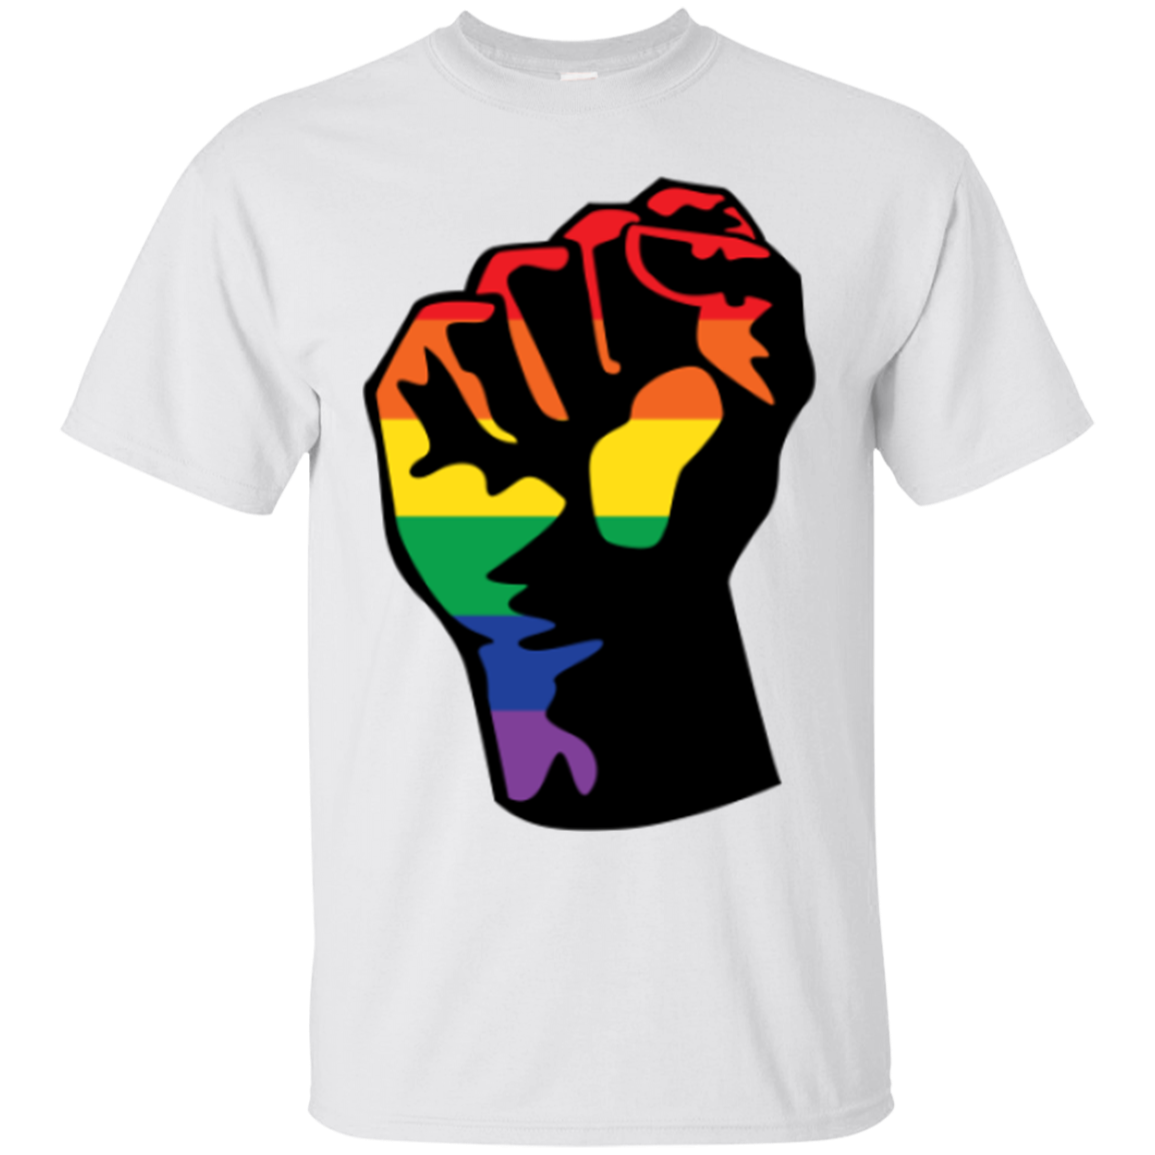 LGBT Pride Unity white T shirt for men ultra cotton white tshirt for men